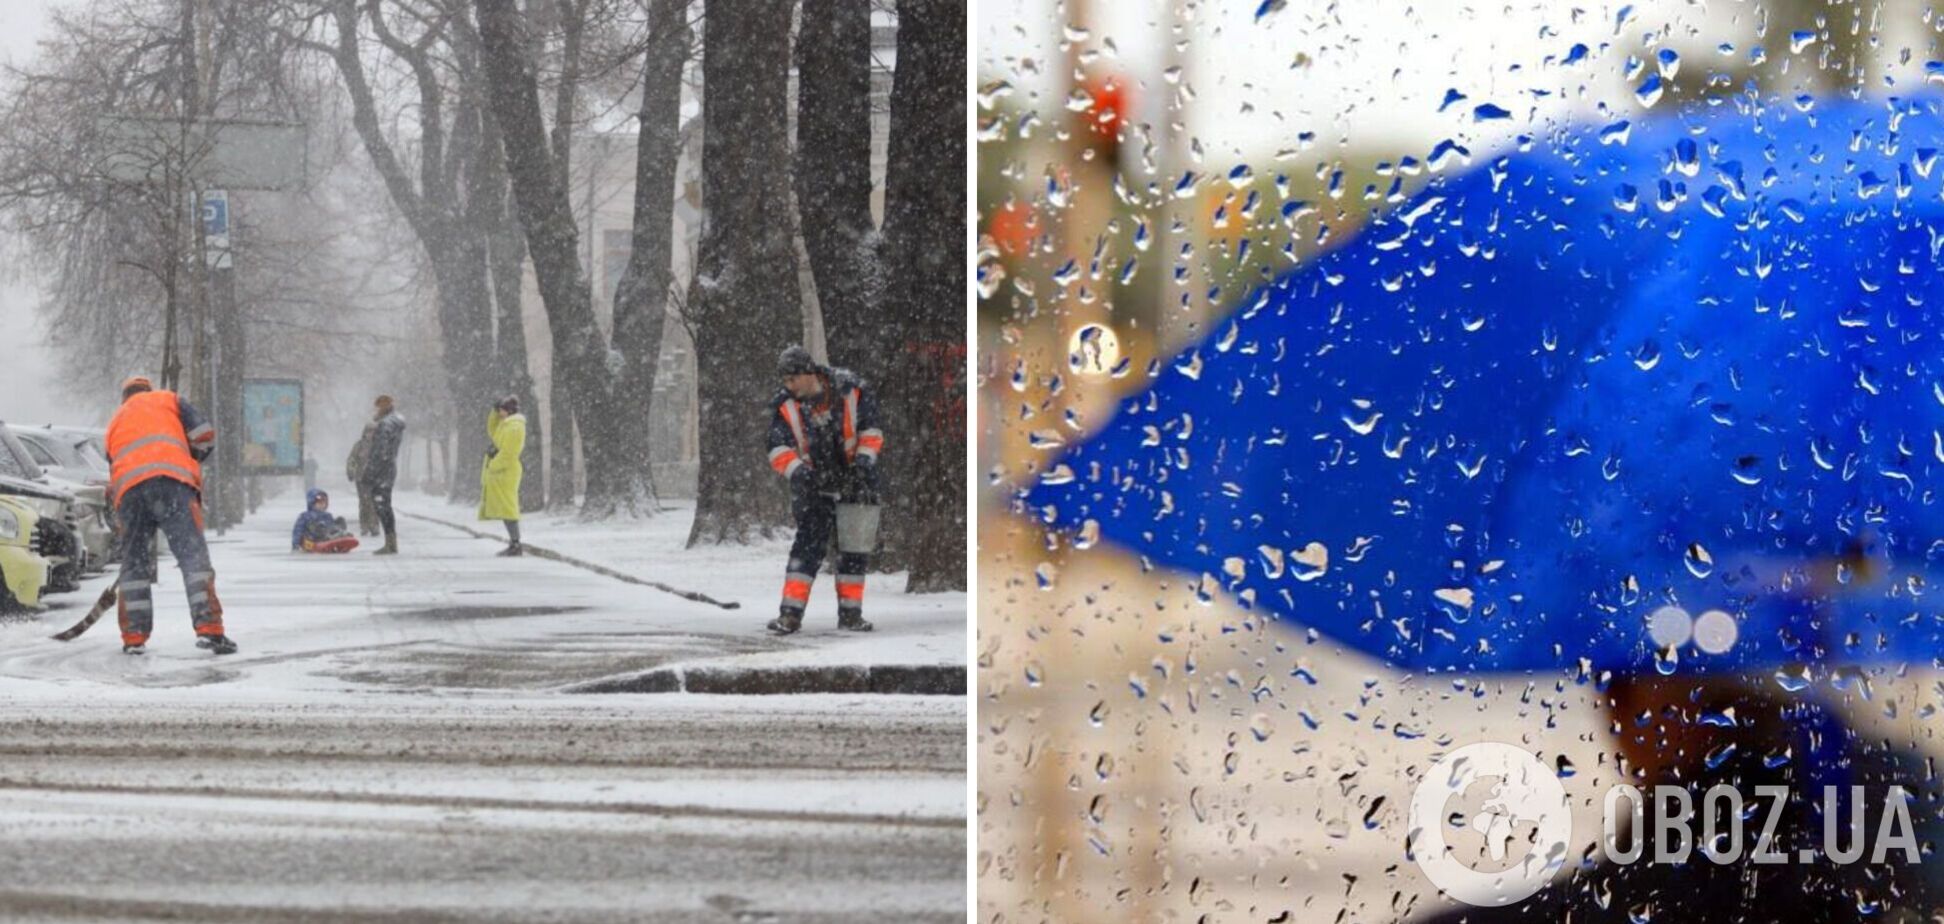 Дожди и снег отступят: синоптики уточнили прогноз погоды в Украине на четверг. Карта